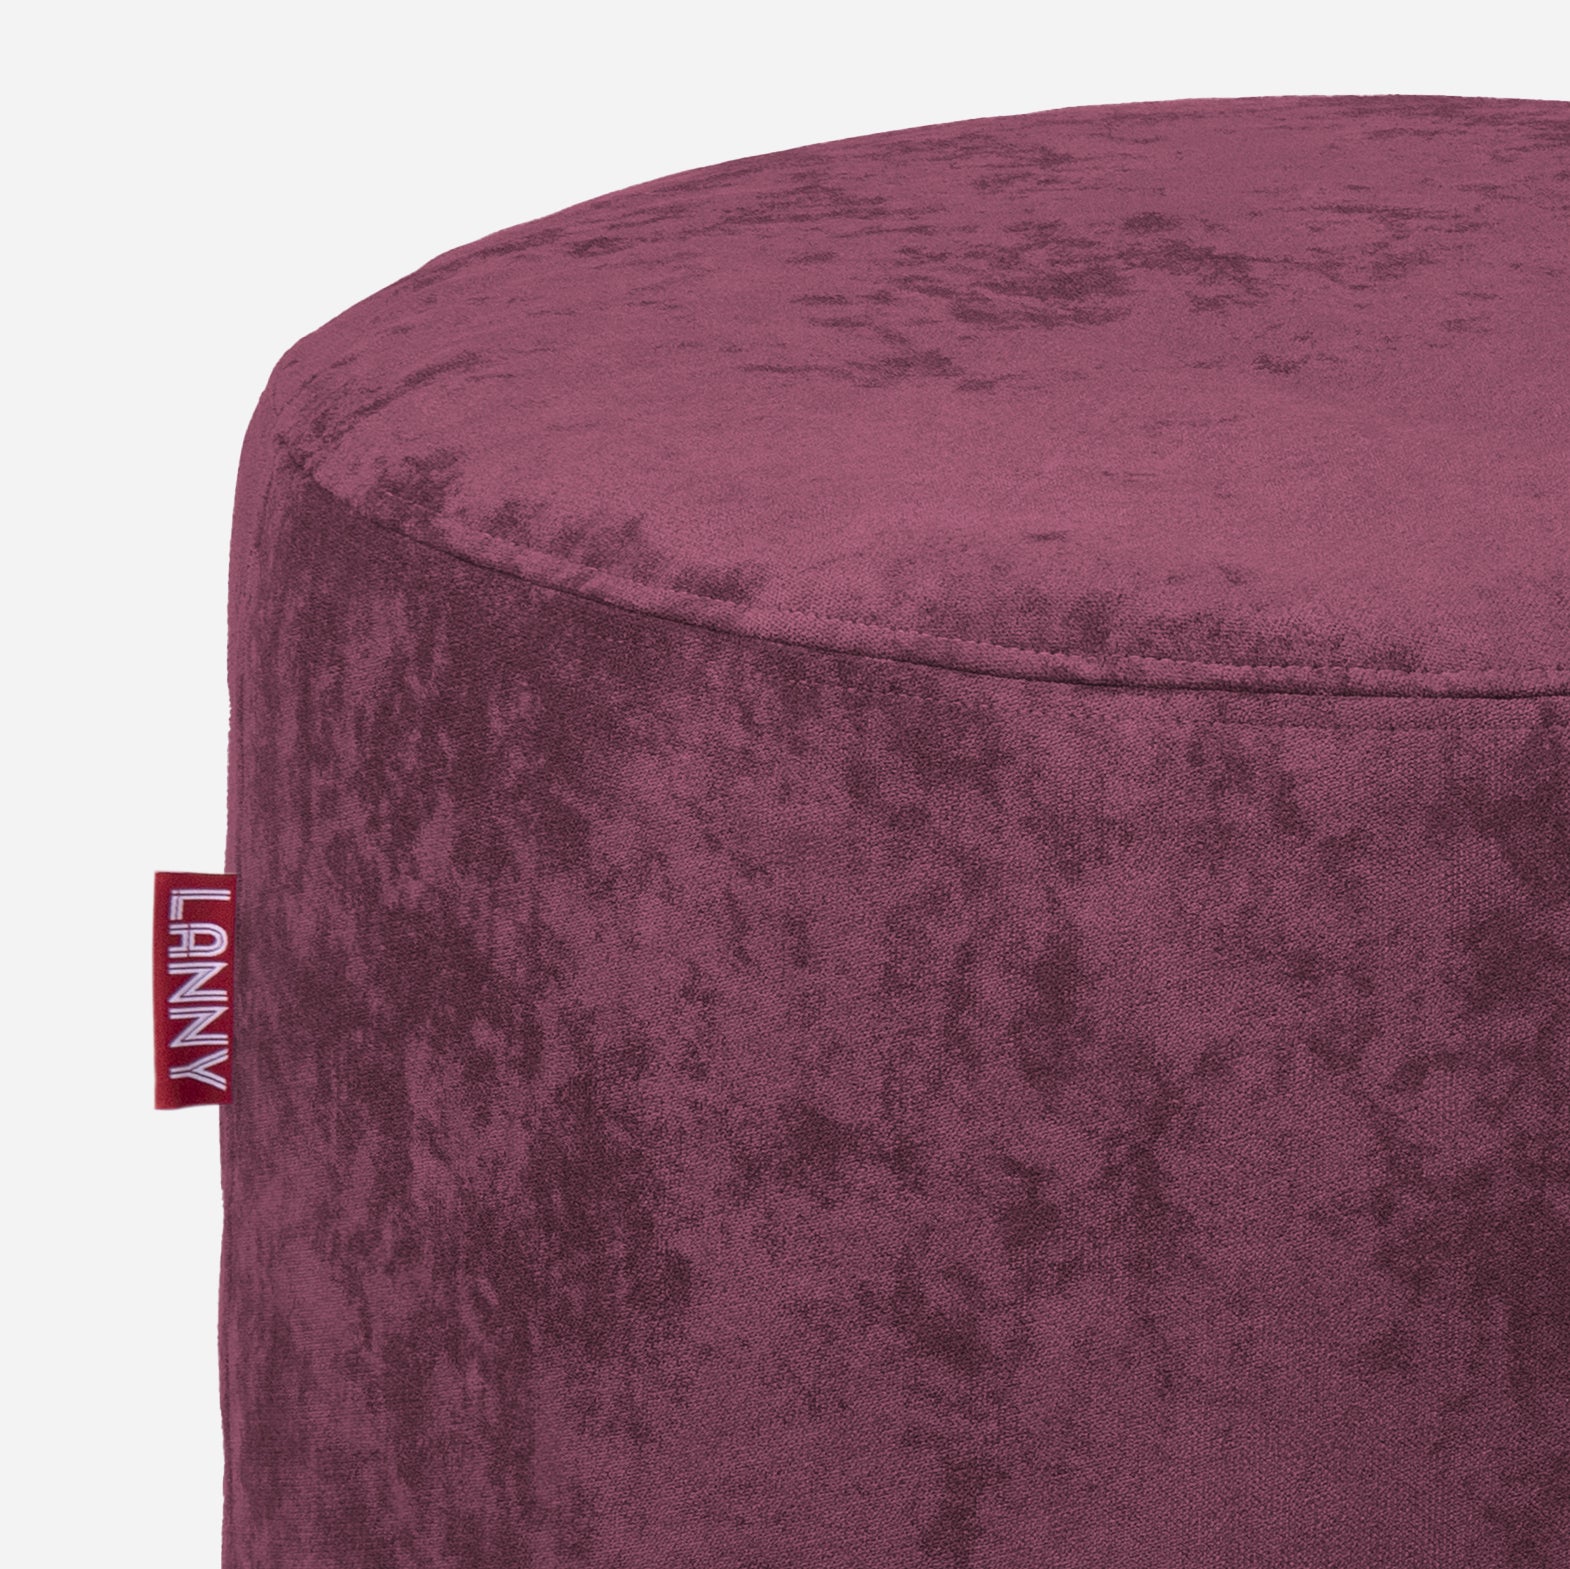 Pouf, Ottoman Purple color by Lanny